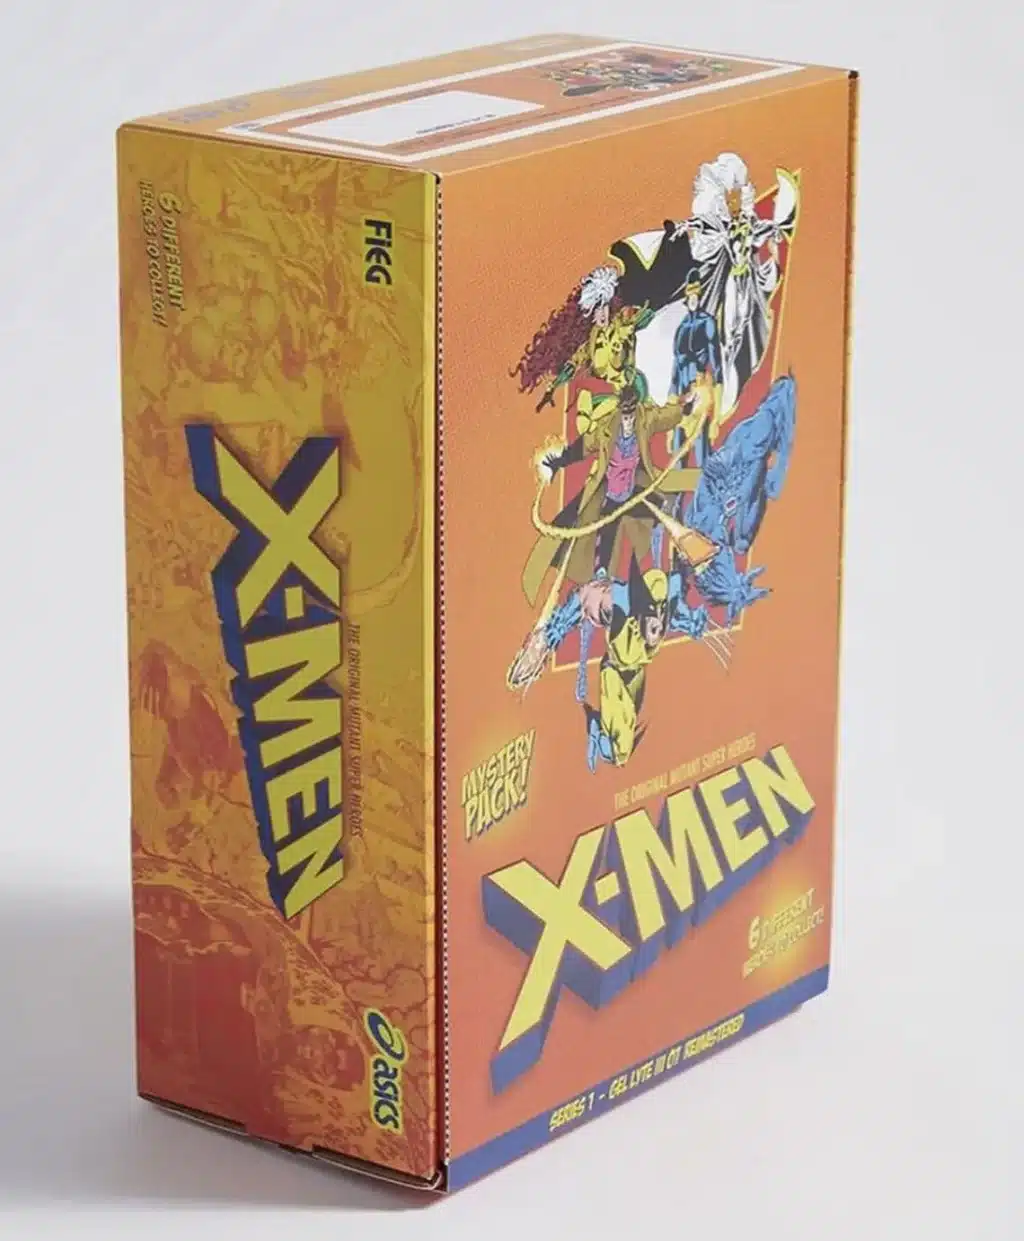 Kith e ASICS lançam coleção dos 60 anos de X-Men na Comic Con de San Diego